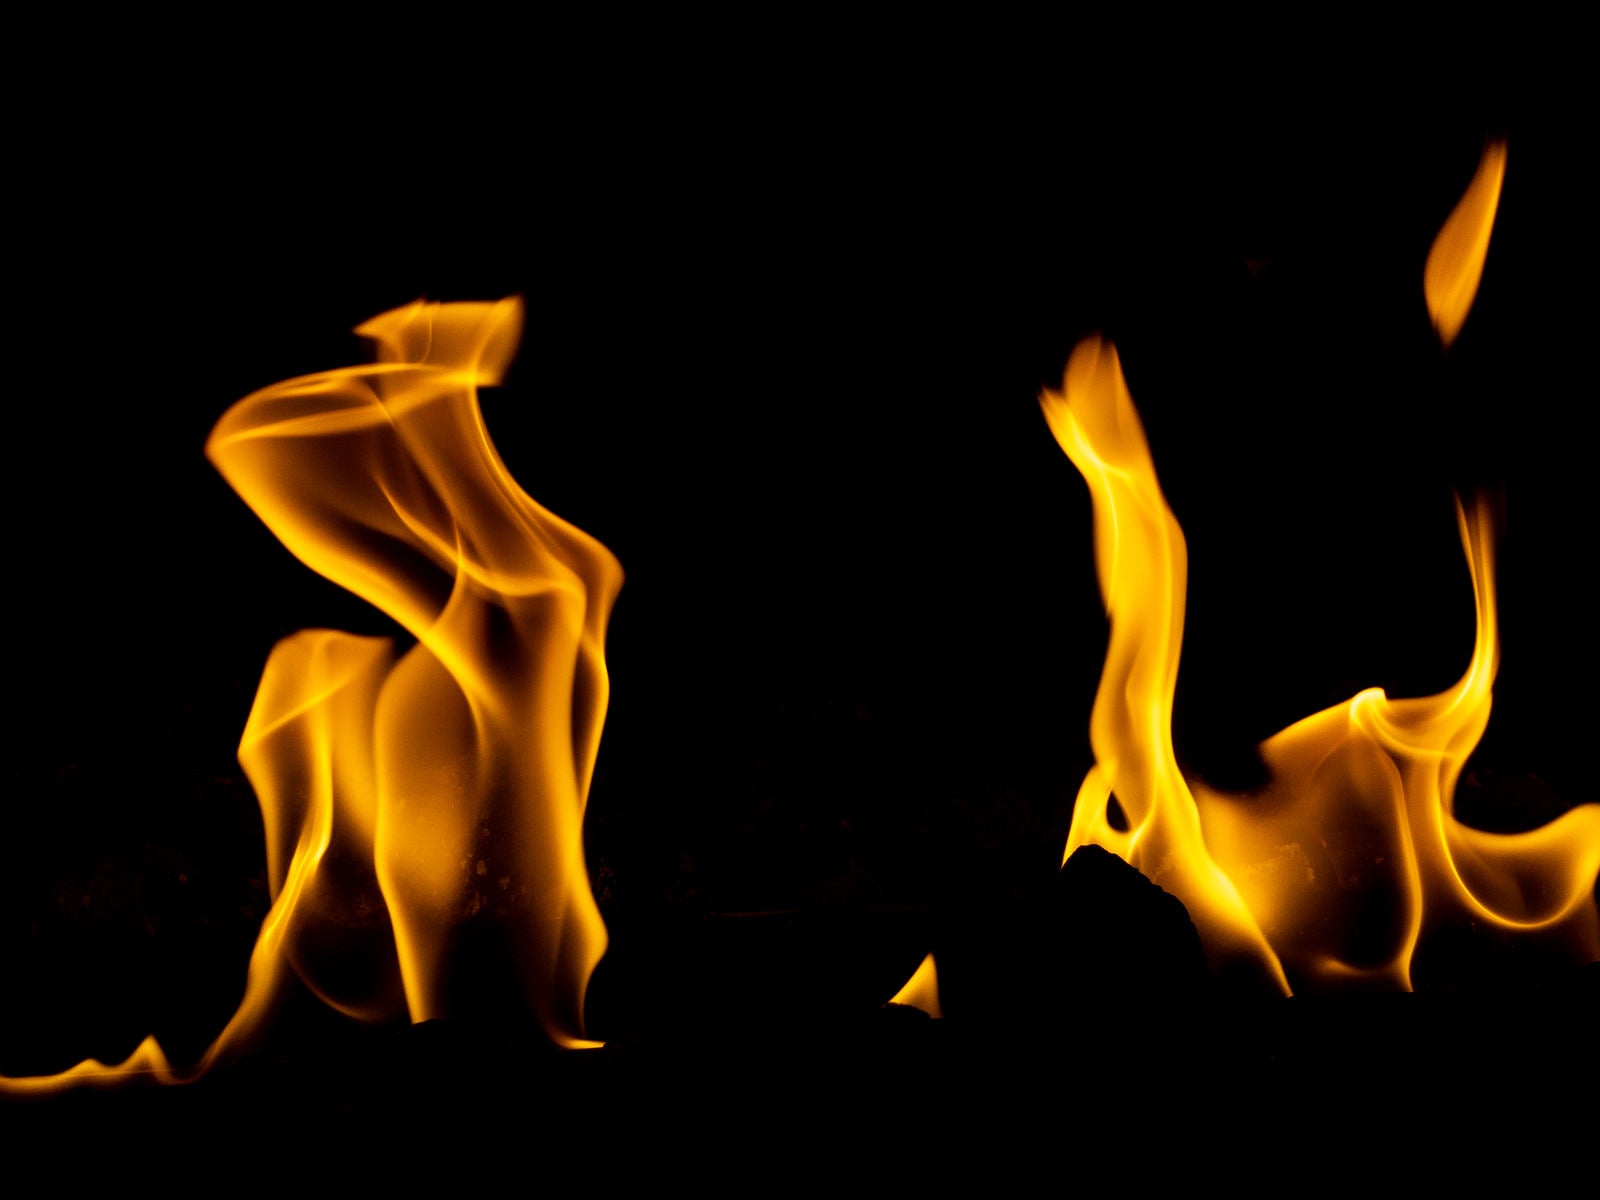 「よく燃える暖炉の火」の写真